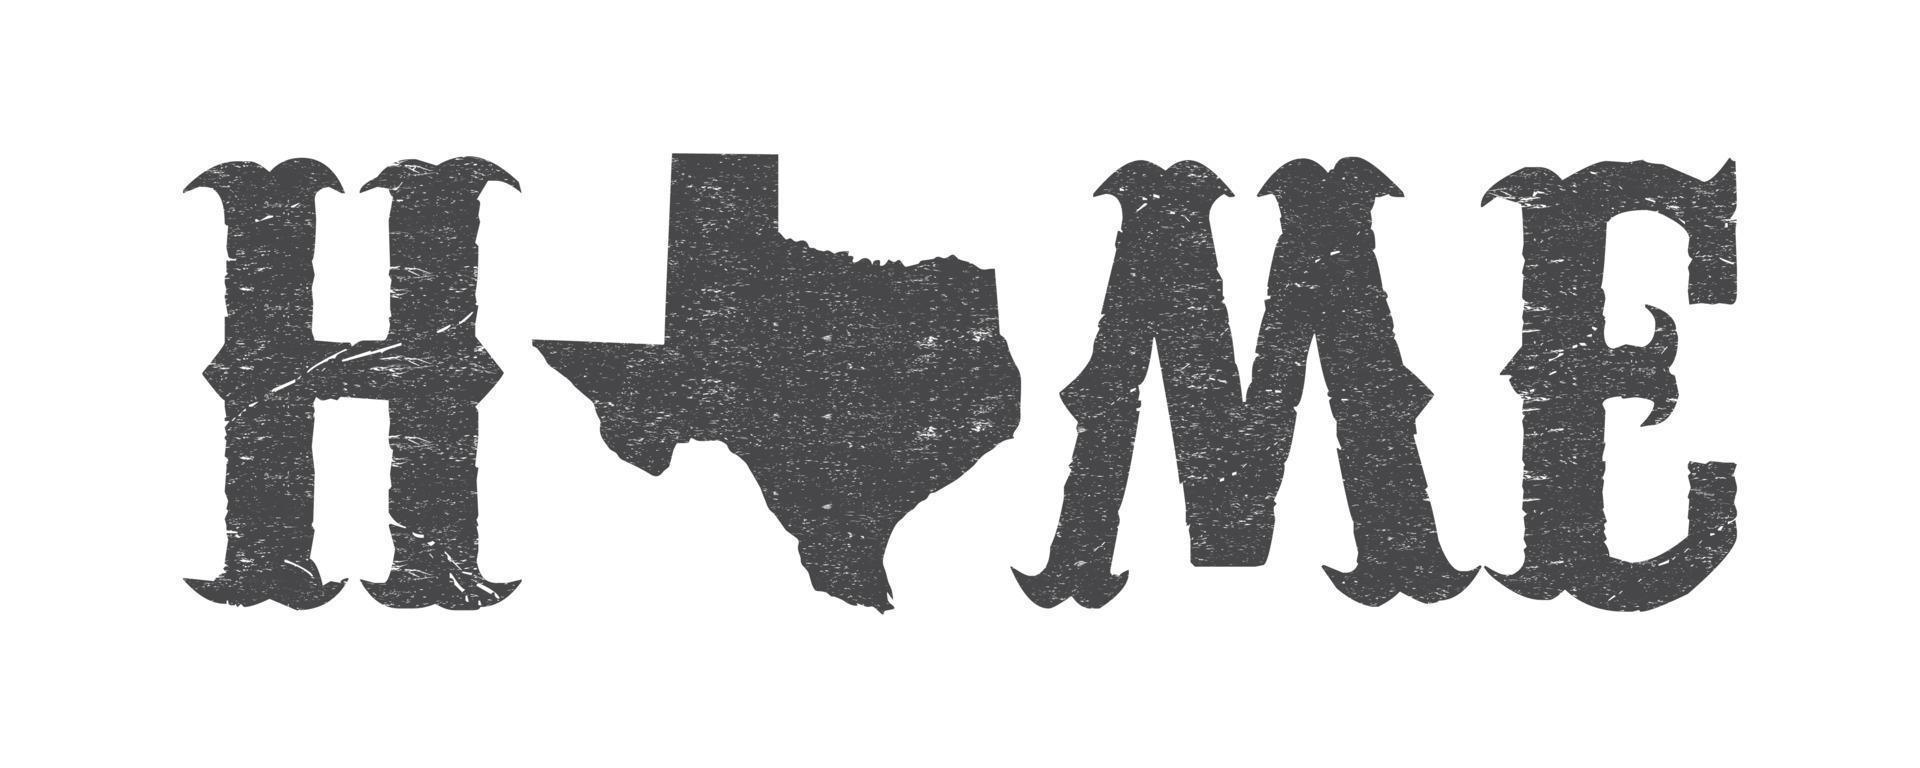 Texas ist Zuhause T-Shirt Design mit Texas Karte und Grunge Wirkung. vektor